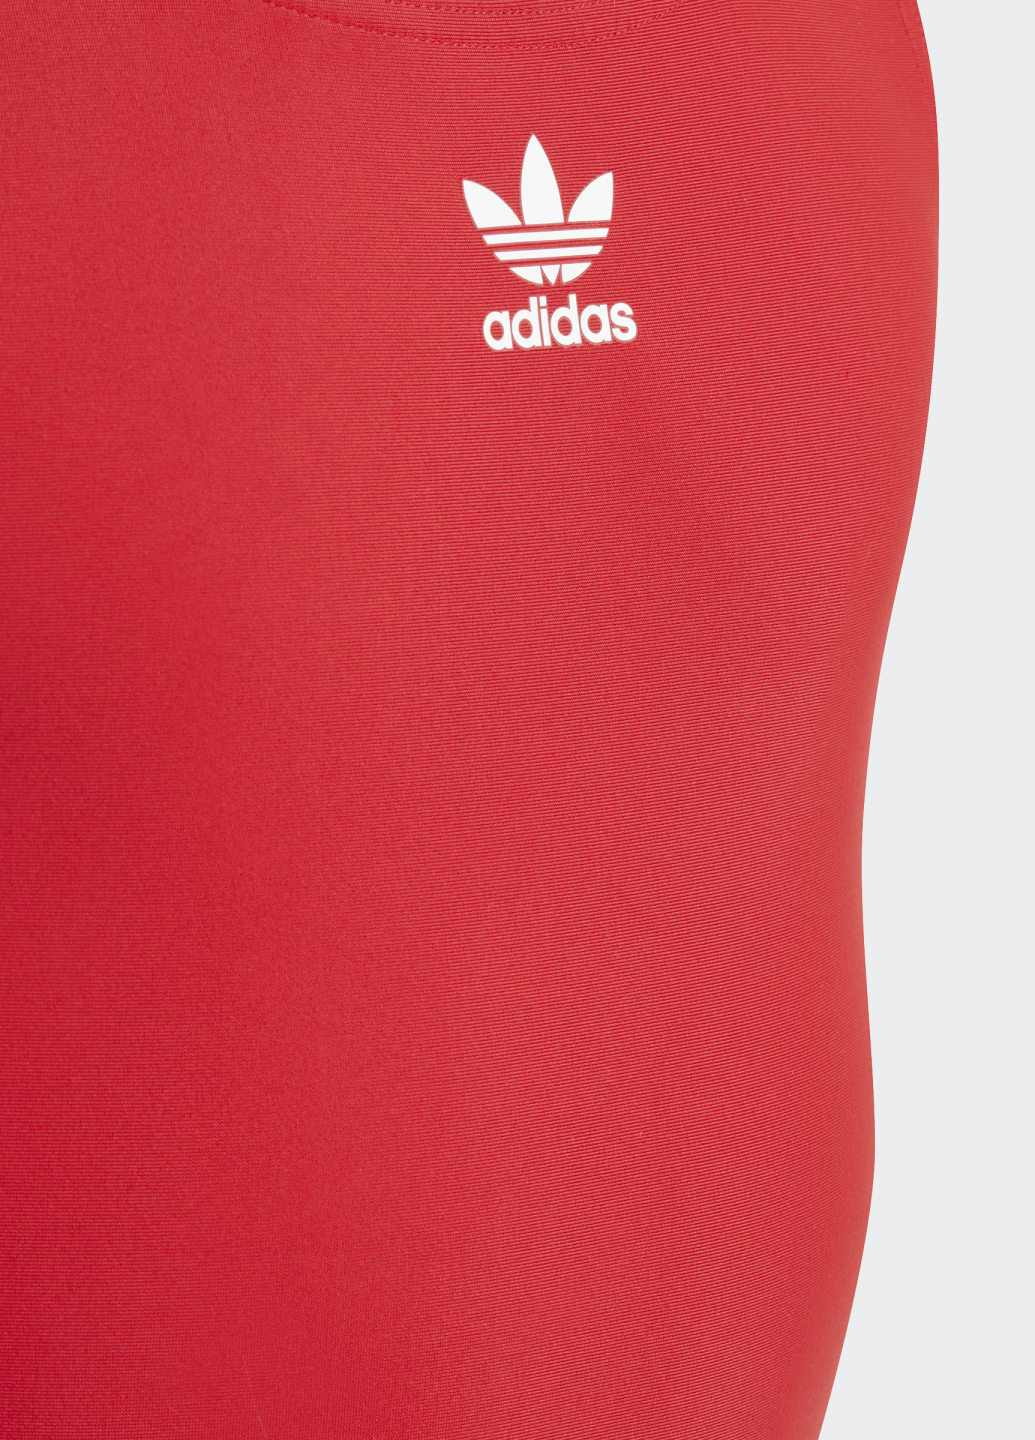 Червоний літній цільний купальник originals adicolor 3-stripes adidas